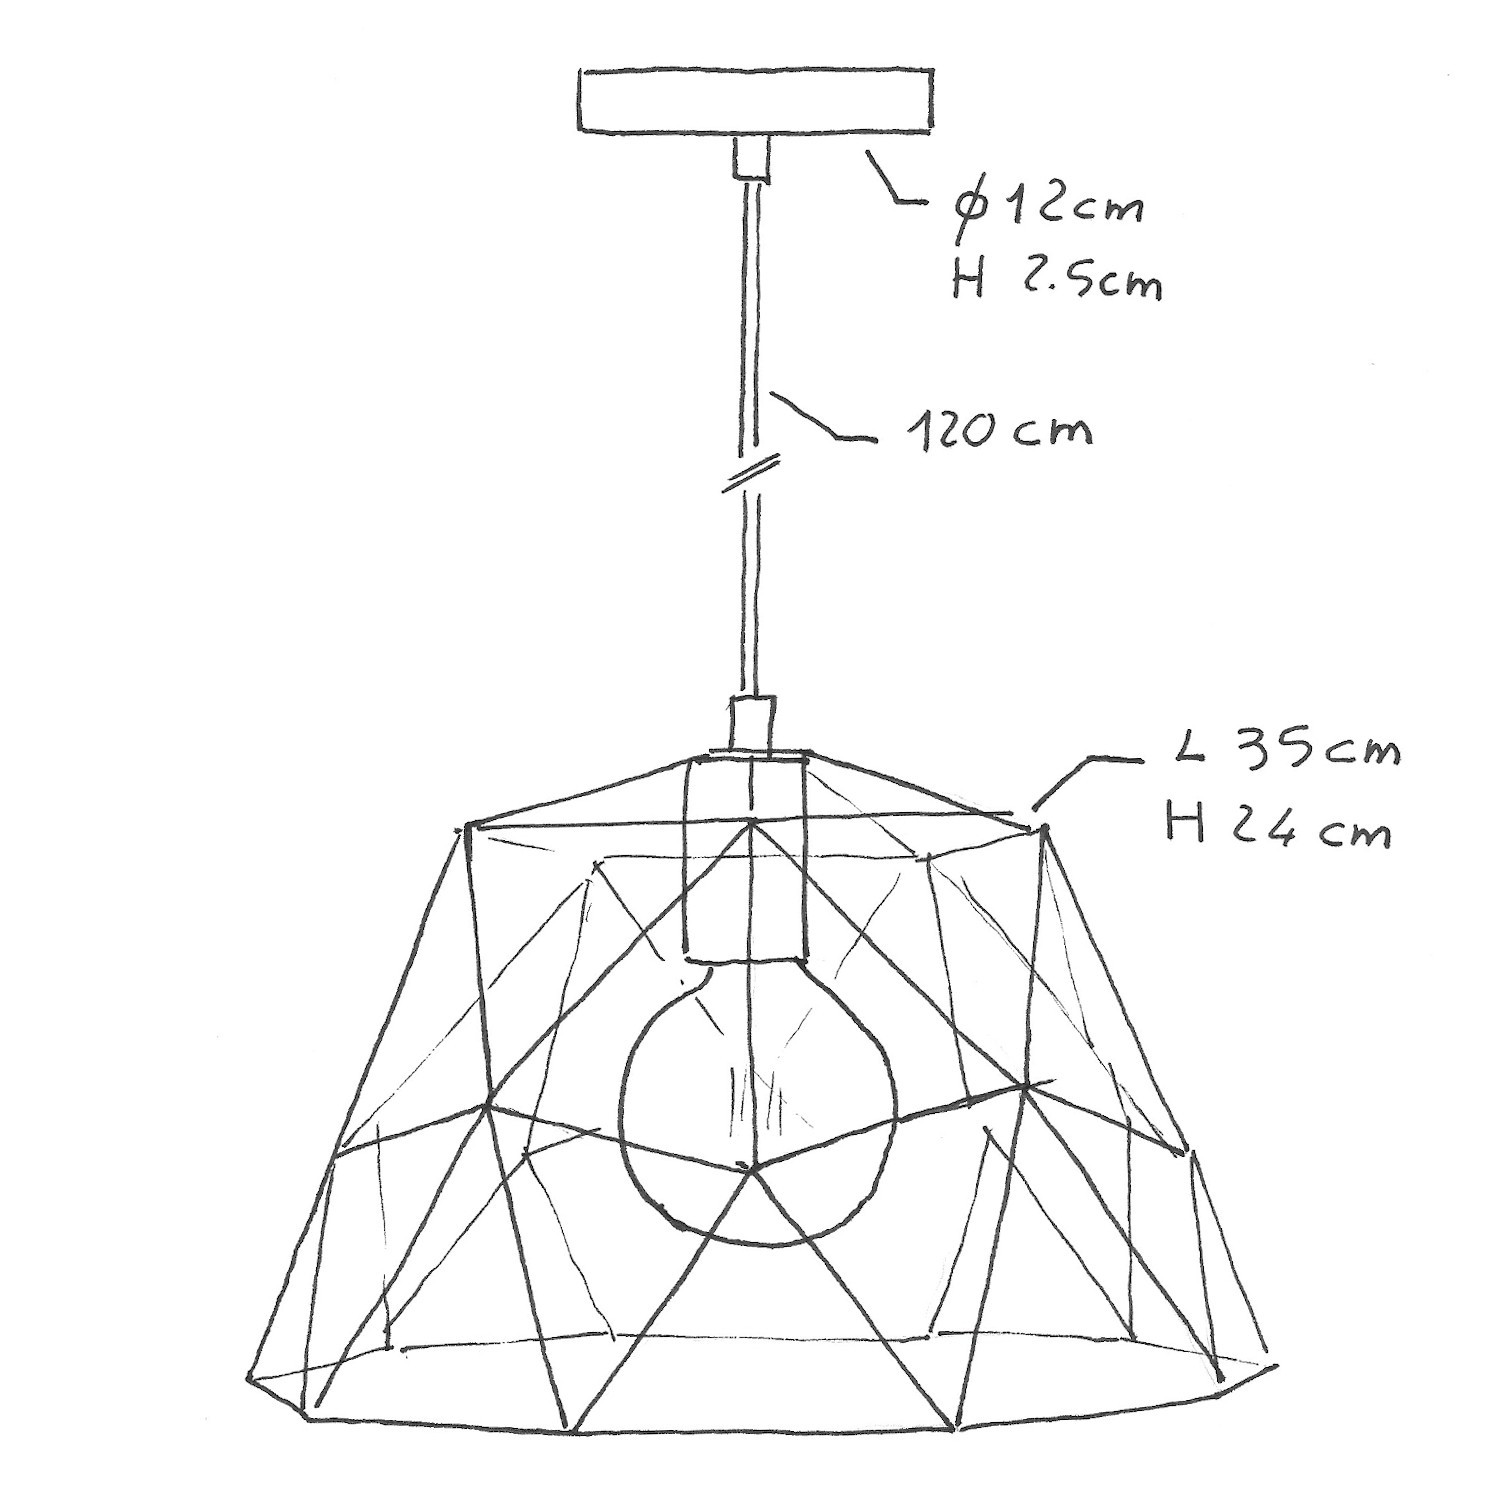 Pendellampa komplett med textilkabel, Dome lampskärm och detaljer i metall - Tillverkad i Italien